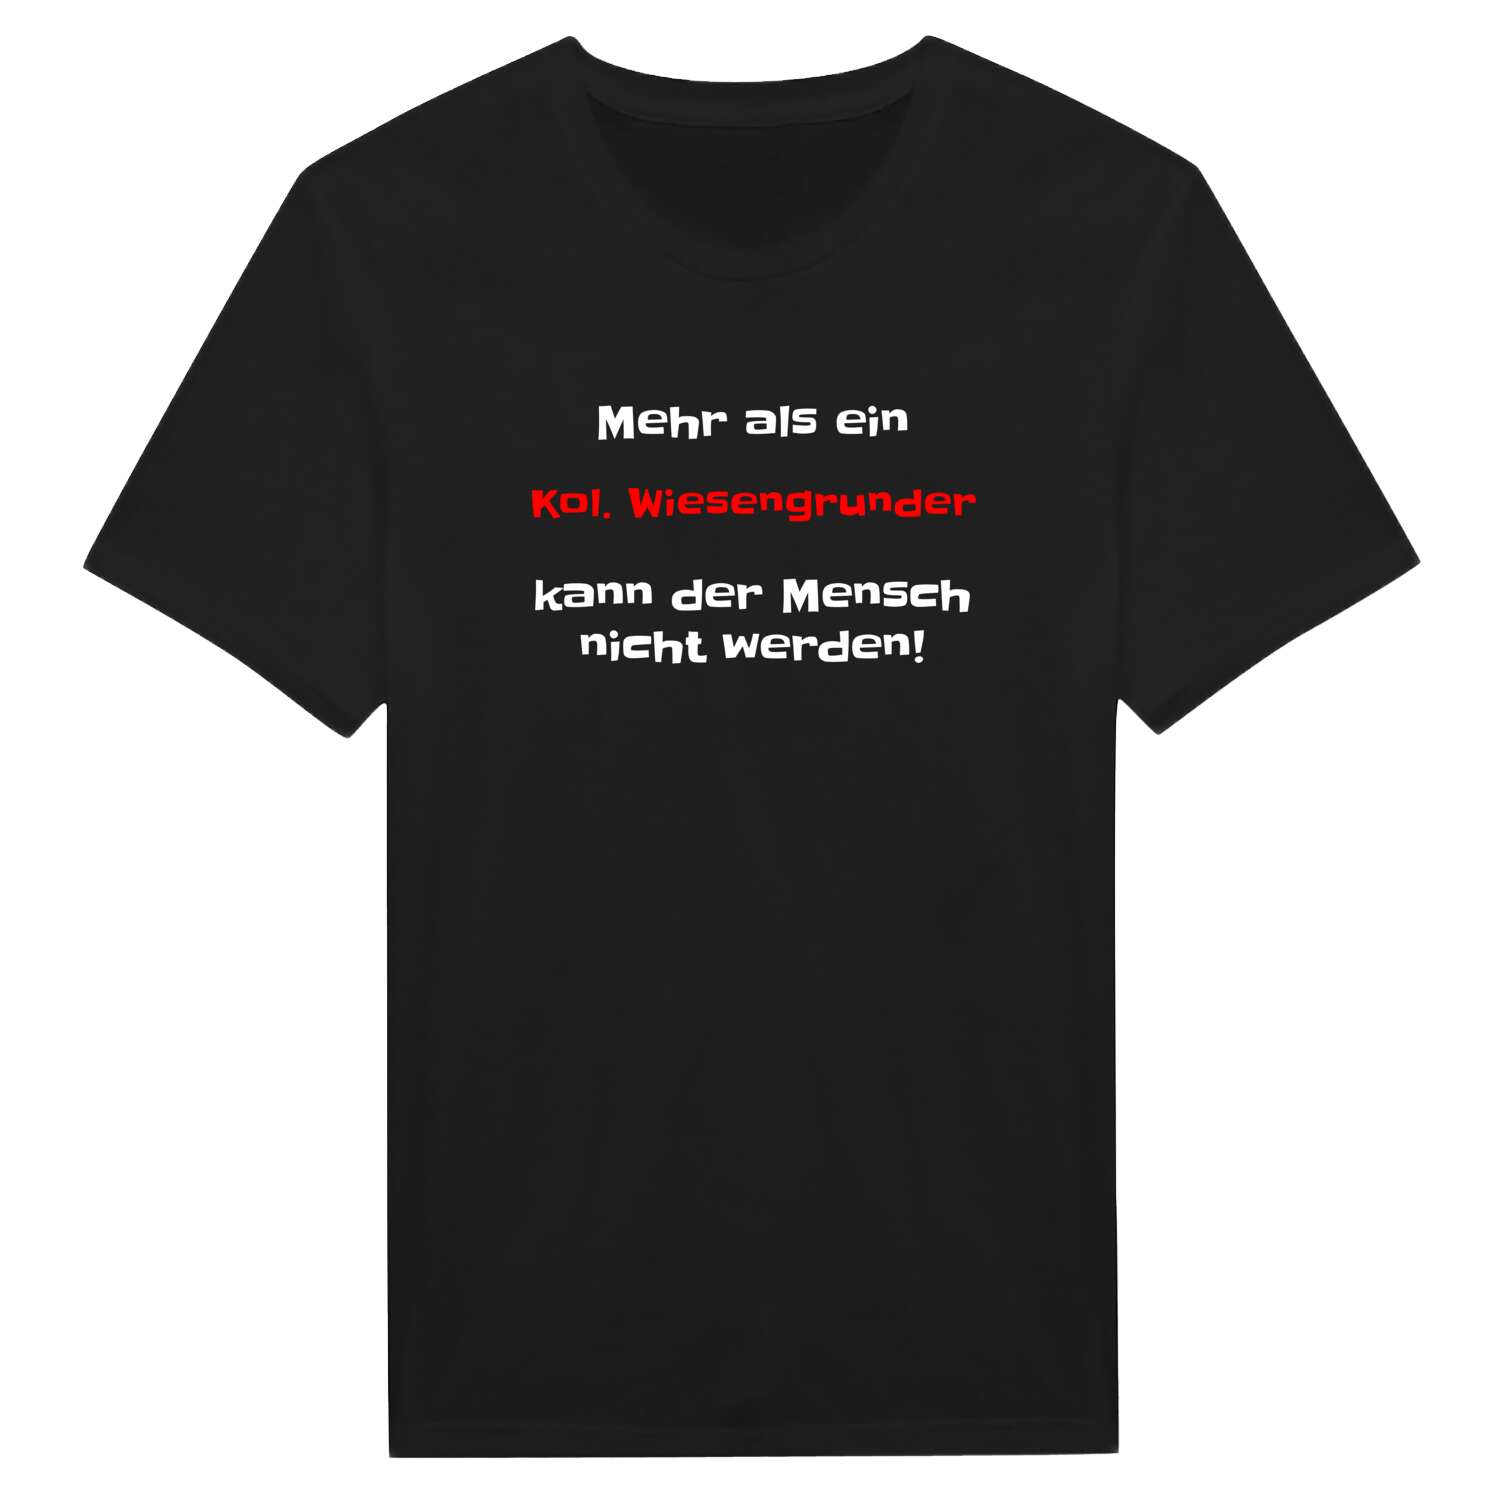 Kol. Wiesengrund T-Shirt »Mehr als ein«